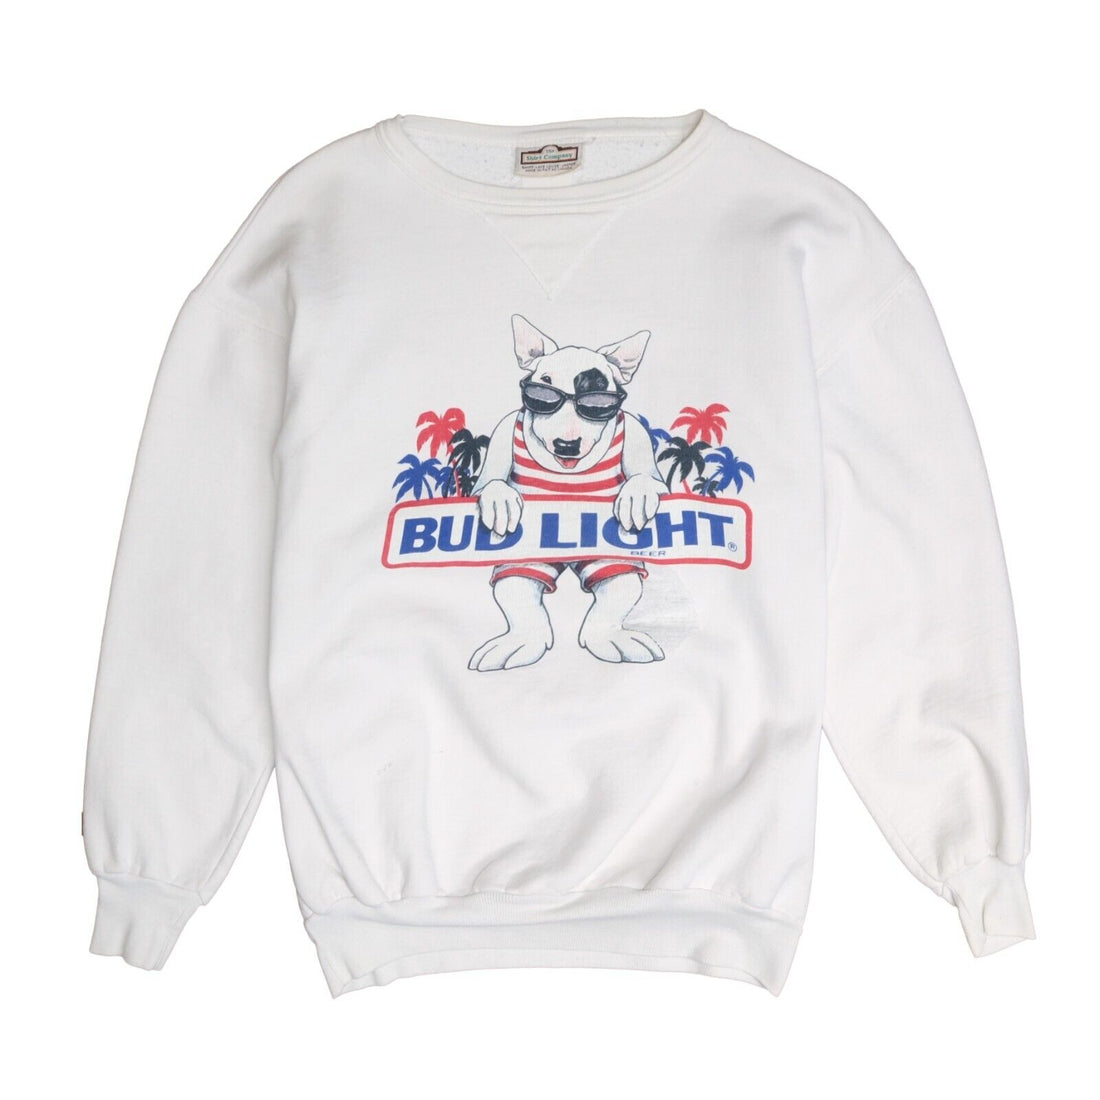 Vintage Bud Light Spud Beer Sweatshirt Crewneck Size Small White